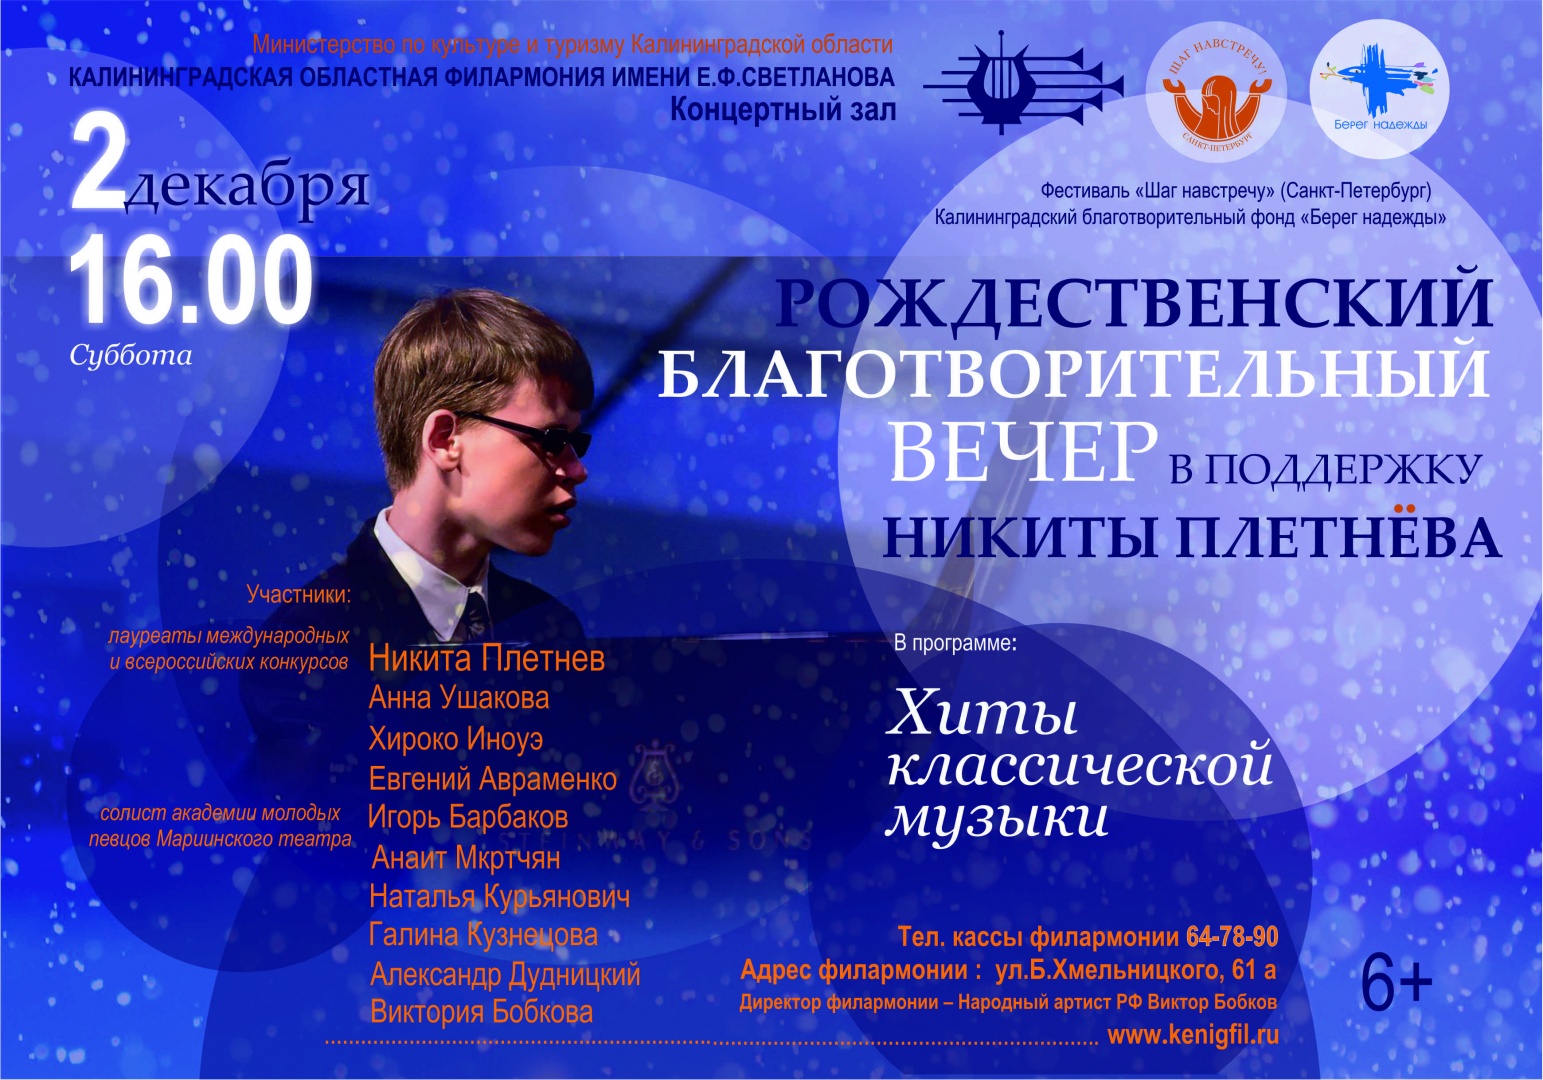  Благотворительный концерт в поддержку Никиты Плетнева